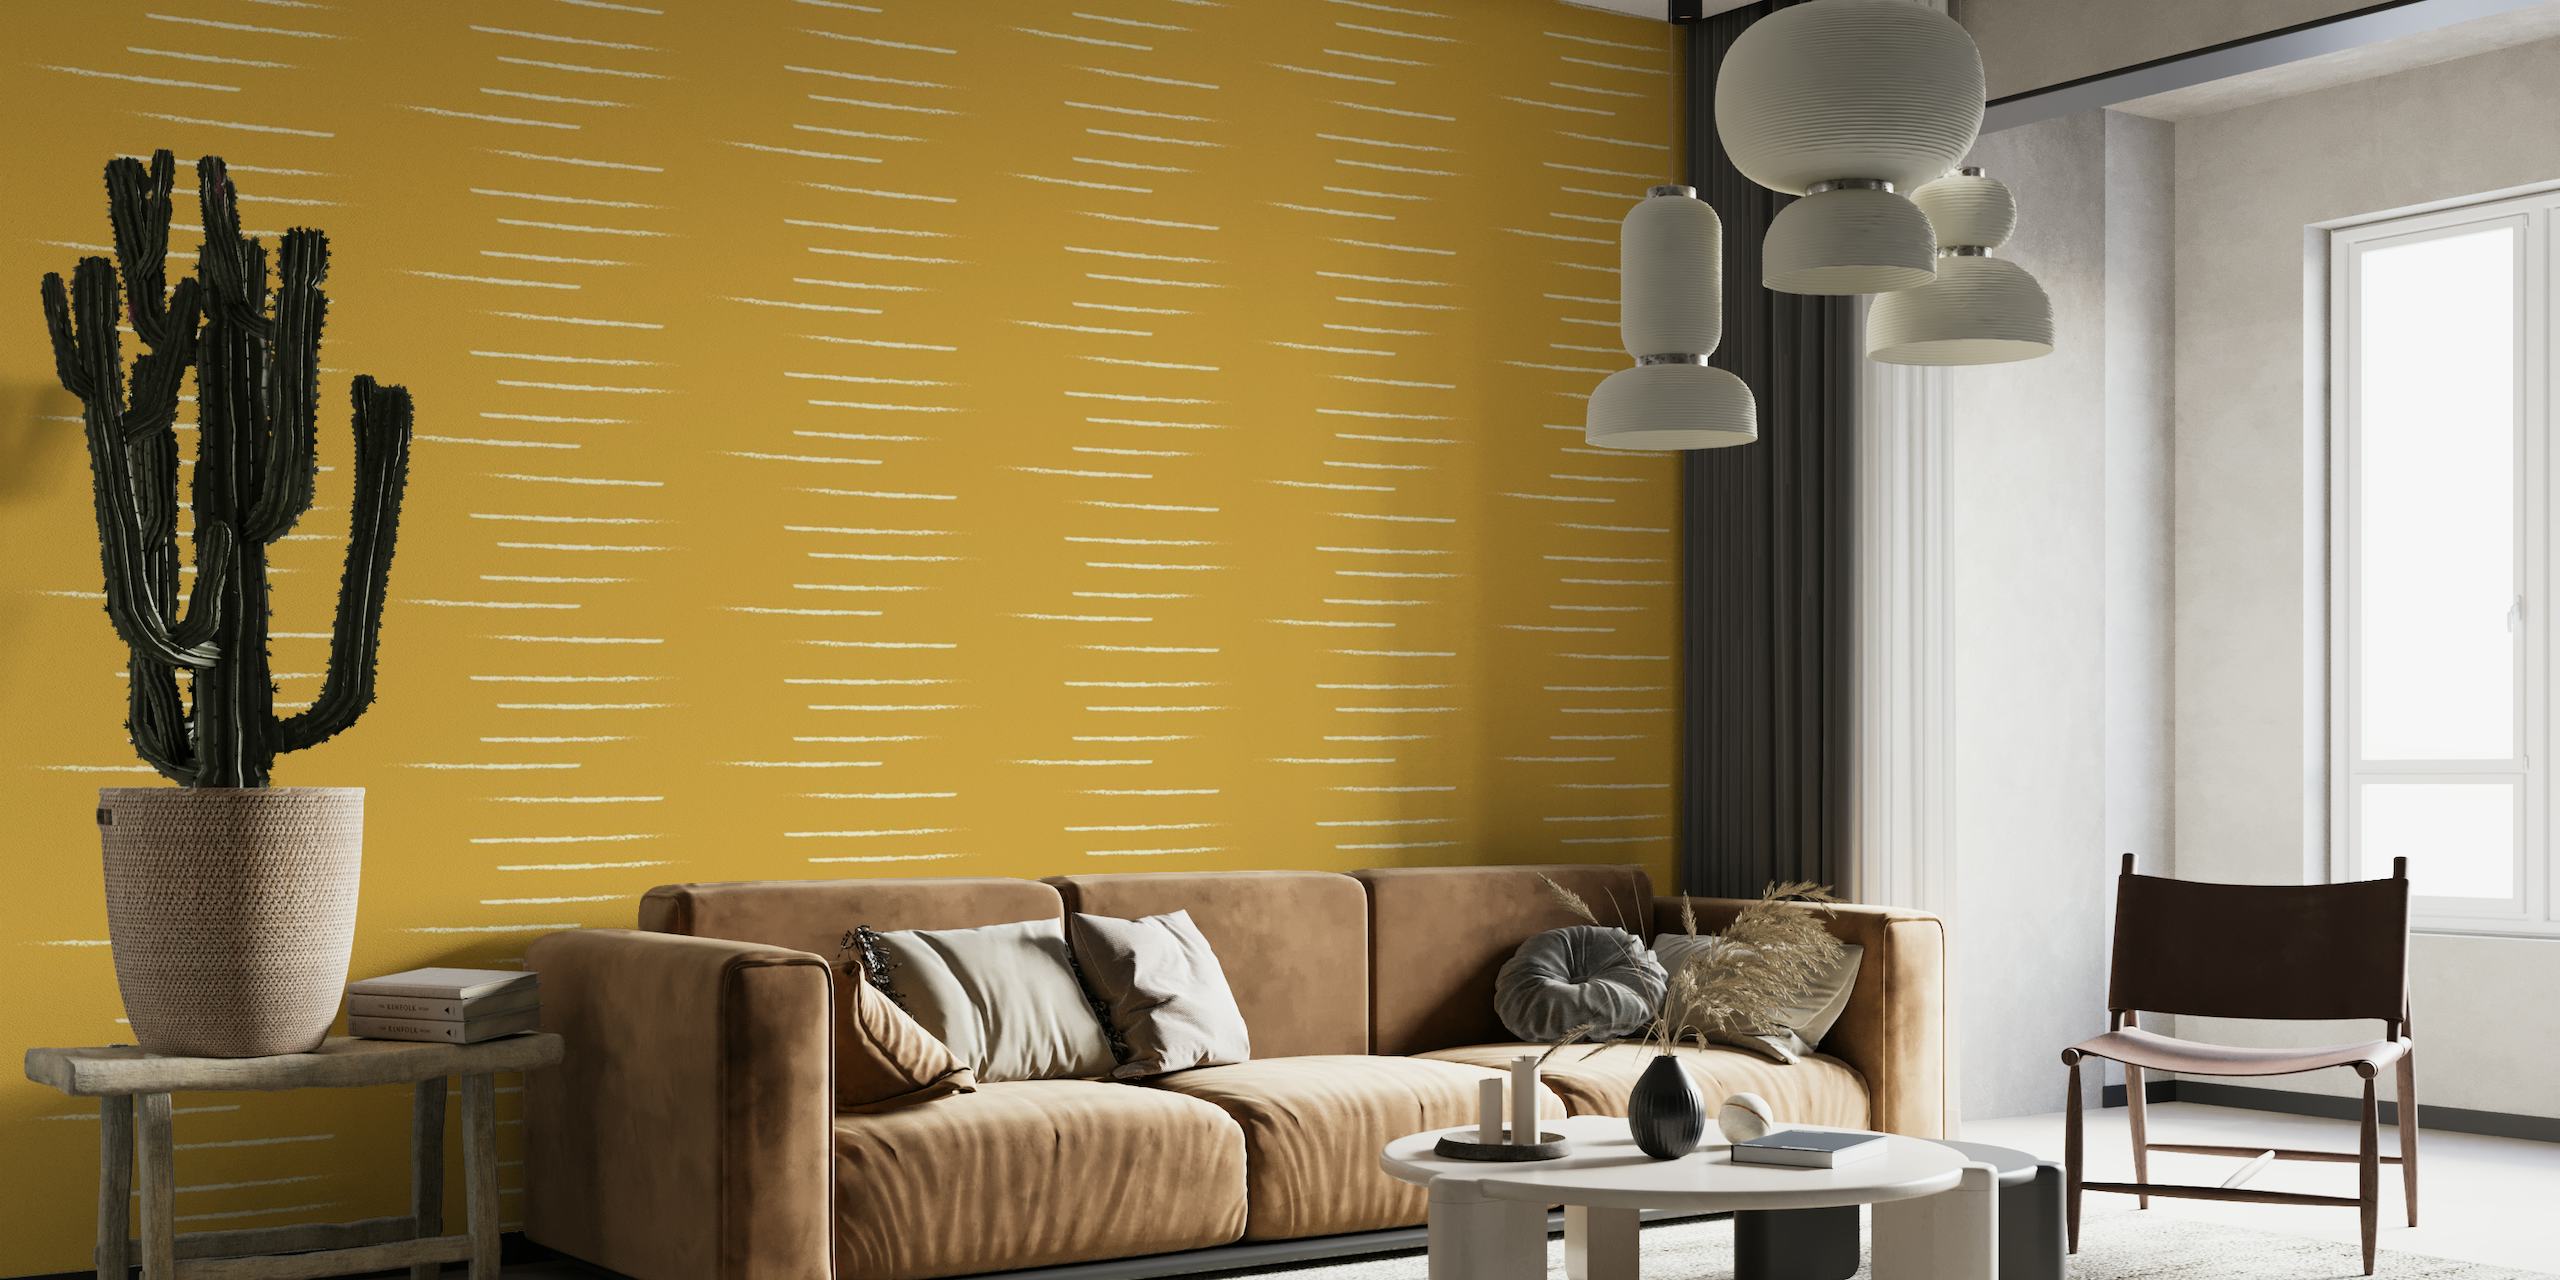 Vaakasuora raidallinen seinämaalaus sinapin beigen sävyissä heijastaen lämmintä ja minimalistista tyyliä